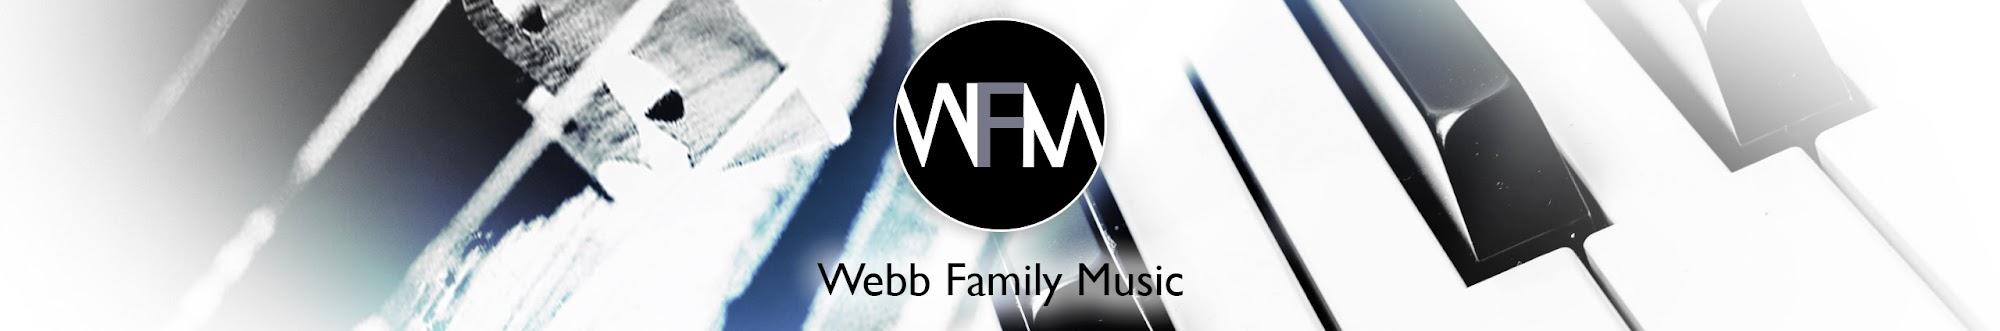 Webb Family Music